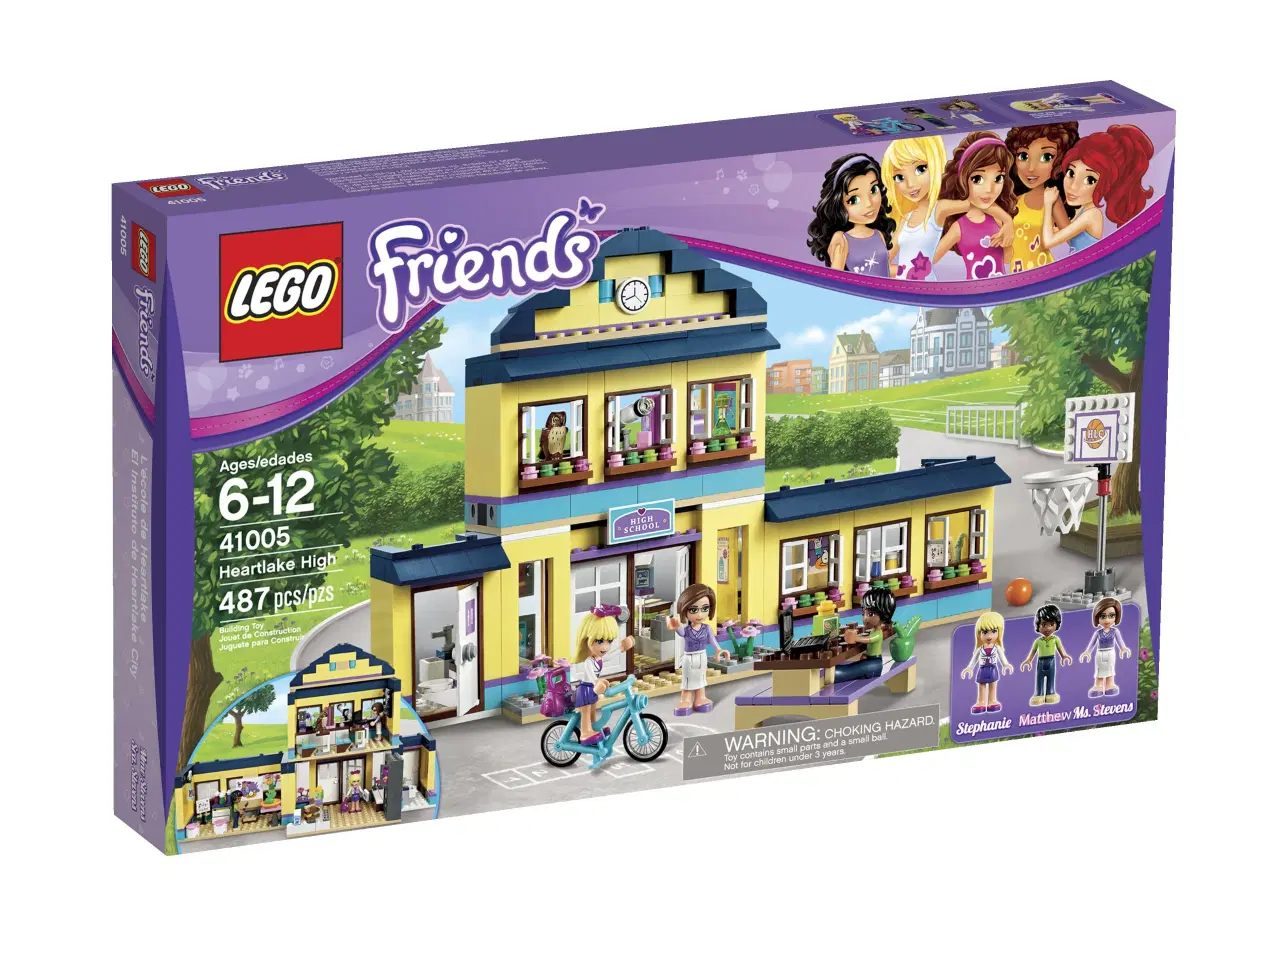 Billede 2 - LEGO Friends Heartlake Folkeskole model 41005